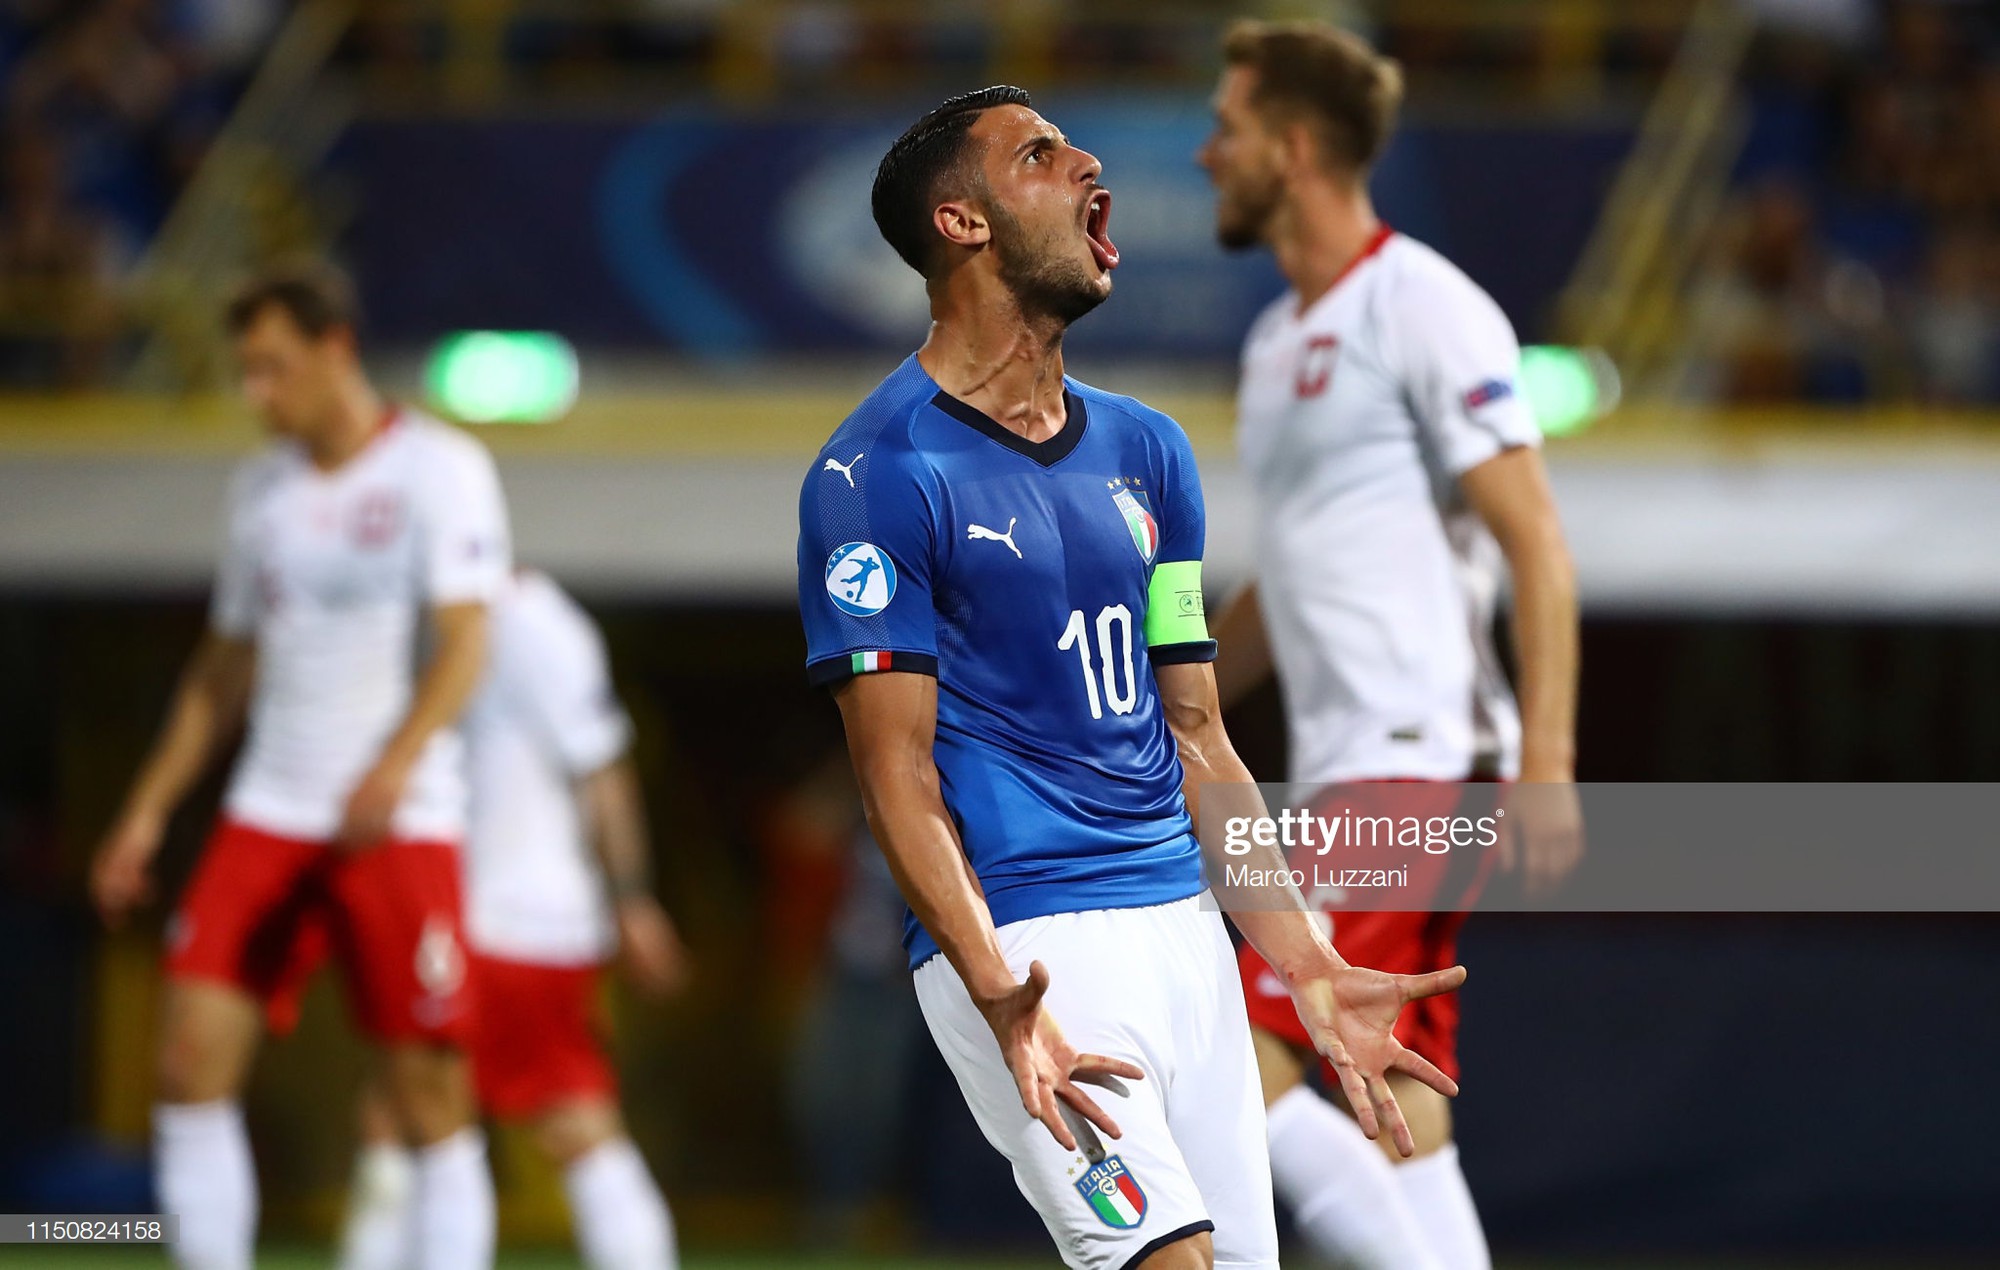 Màn hát quốc ca siêu hoành tráng của dàn cầu thủ đẹp trai Italy khiến các cậu bé mascot bịt tai sợ hãi - Ảnh 7.